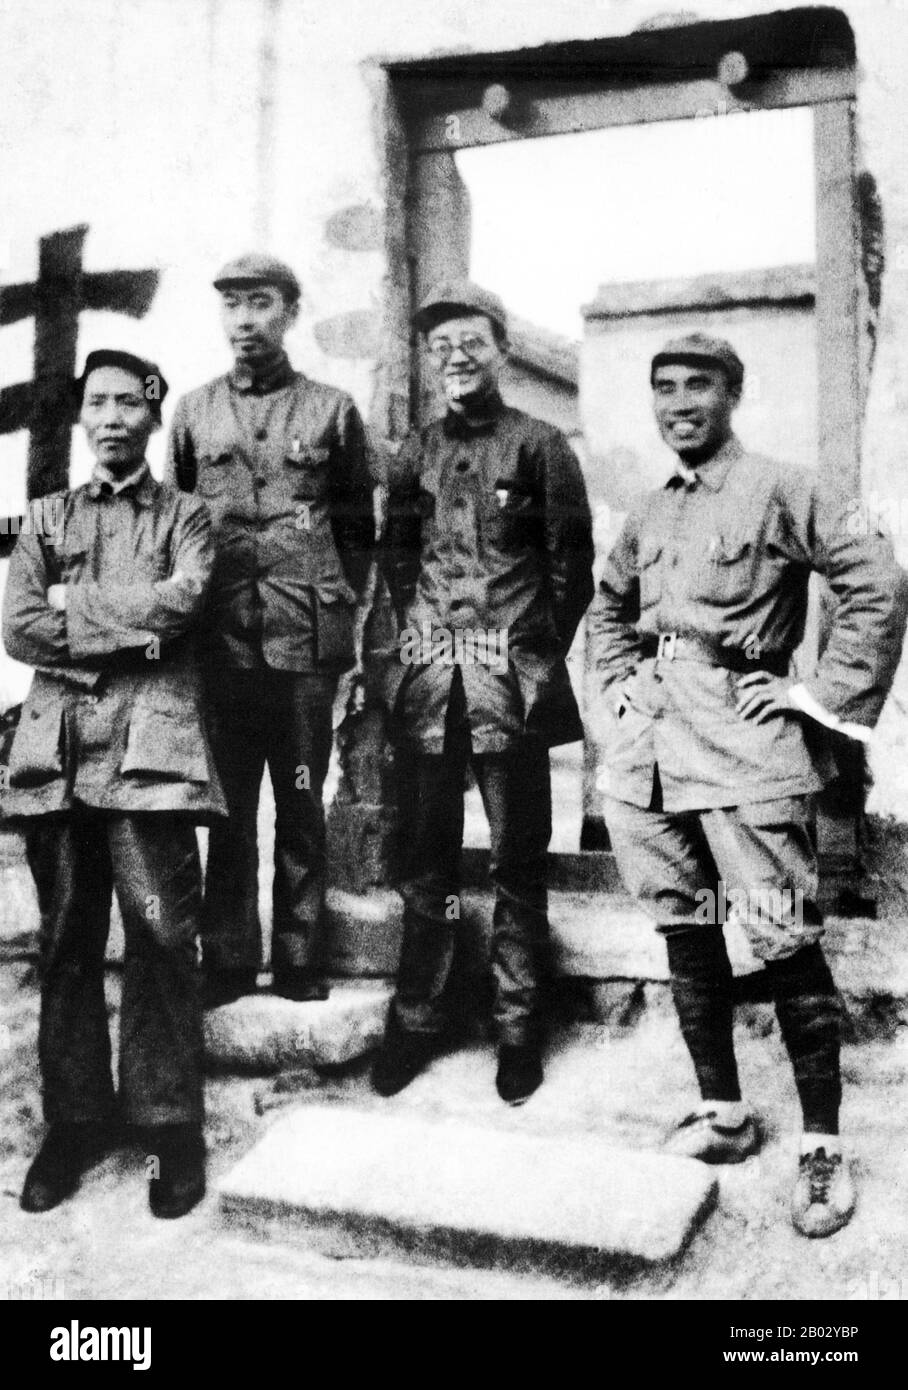 Die chinesische Arbeiter- und Bauern-Rote Armee (Zhongguo Gongnong Hongkong), auch chinesische Rote Armee oder einfach Rote Armee genannt, war eine Gruppenarmee unter dem Kommando der Kommunistischen Partei Chinas. Die Rote Armee der chinesischen Arbeiter und Bauern wurde am 25. Mai 1928 im Ersten chinesischen Bürgerkrieg gegründet. Zwischen 1934 und 1935 überstand die Rote Armee mehrere Feldzüge gegen die nationalistischen Kräfte, die vom Generalissimo Chiang Kai-Schek angeführt und am Langen Marsch beteiligt waren. Bis zum langen Marsch von 1934 waren zahlreiche kleine Einheiten zu drei einheitlichen Gruppen organisiert worden, der Ersten Roten Armee, Stockfoto